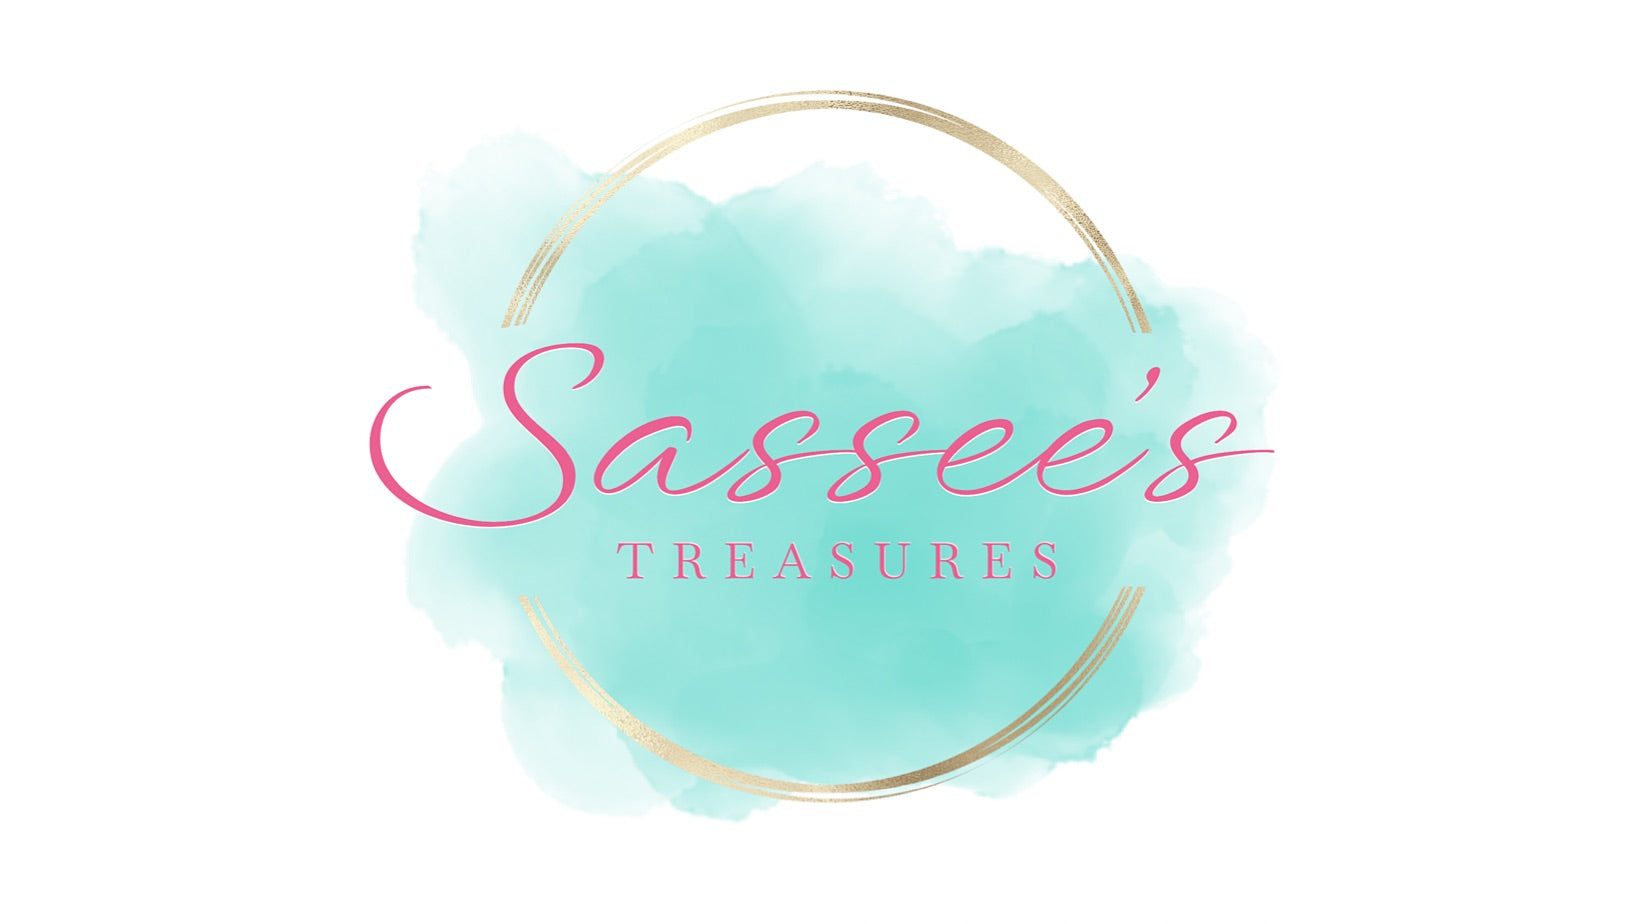 Sassee's Treasure's